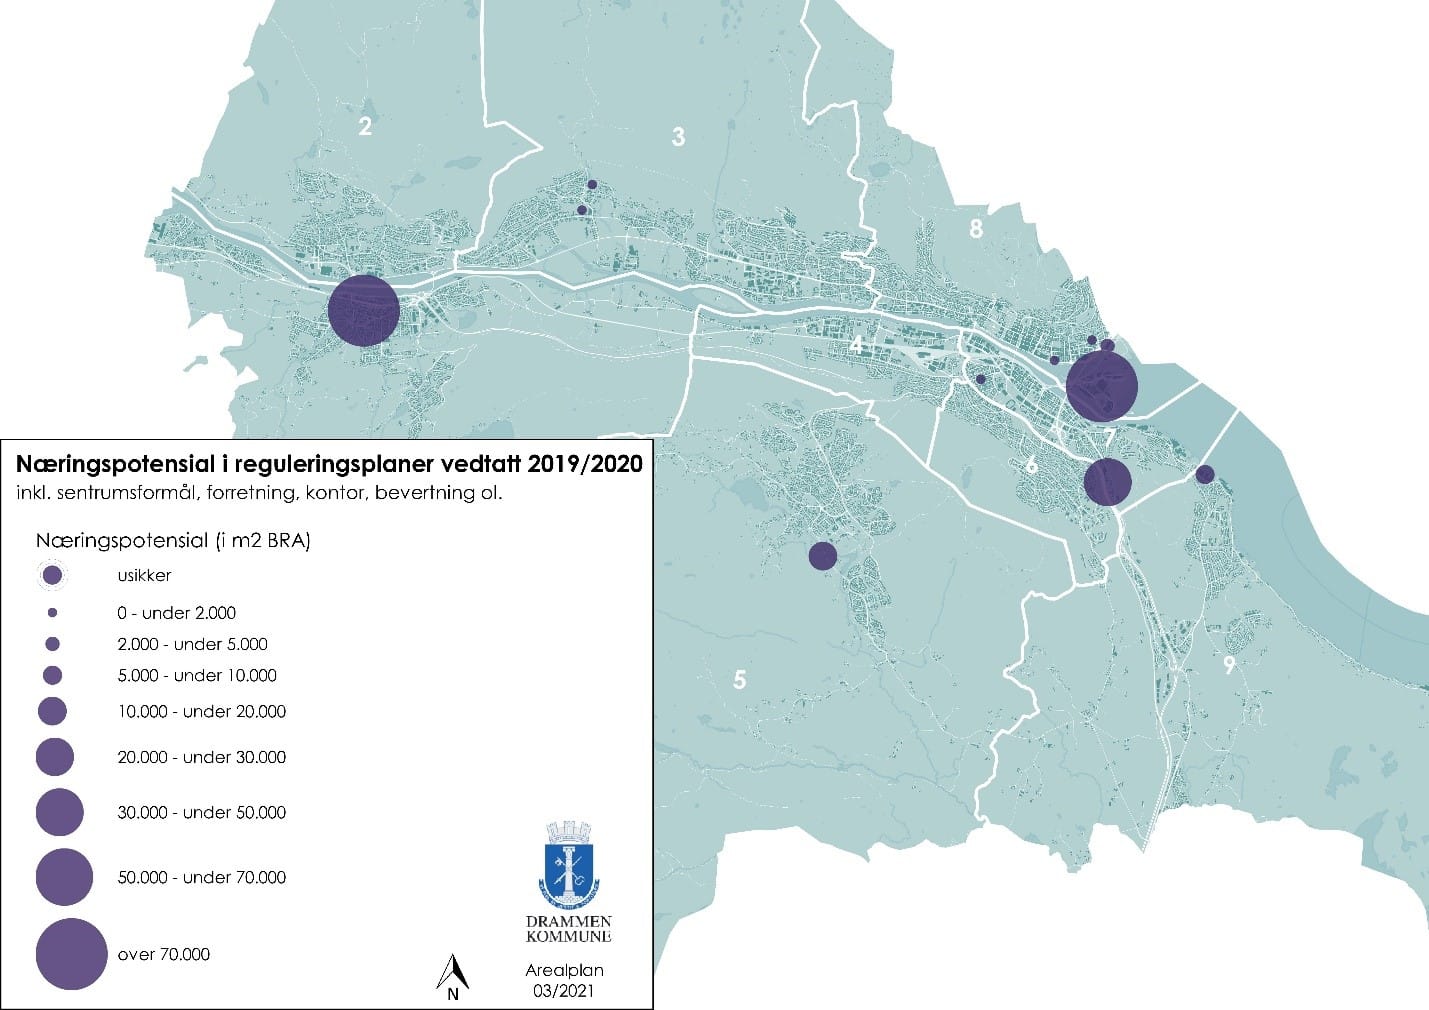  Bildet viser kart over kommunen, der næringspotensialet vises i størrelsesorden i ulike deler av kommunen, flest ved Mjøndalen og Slippen